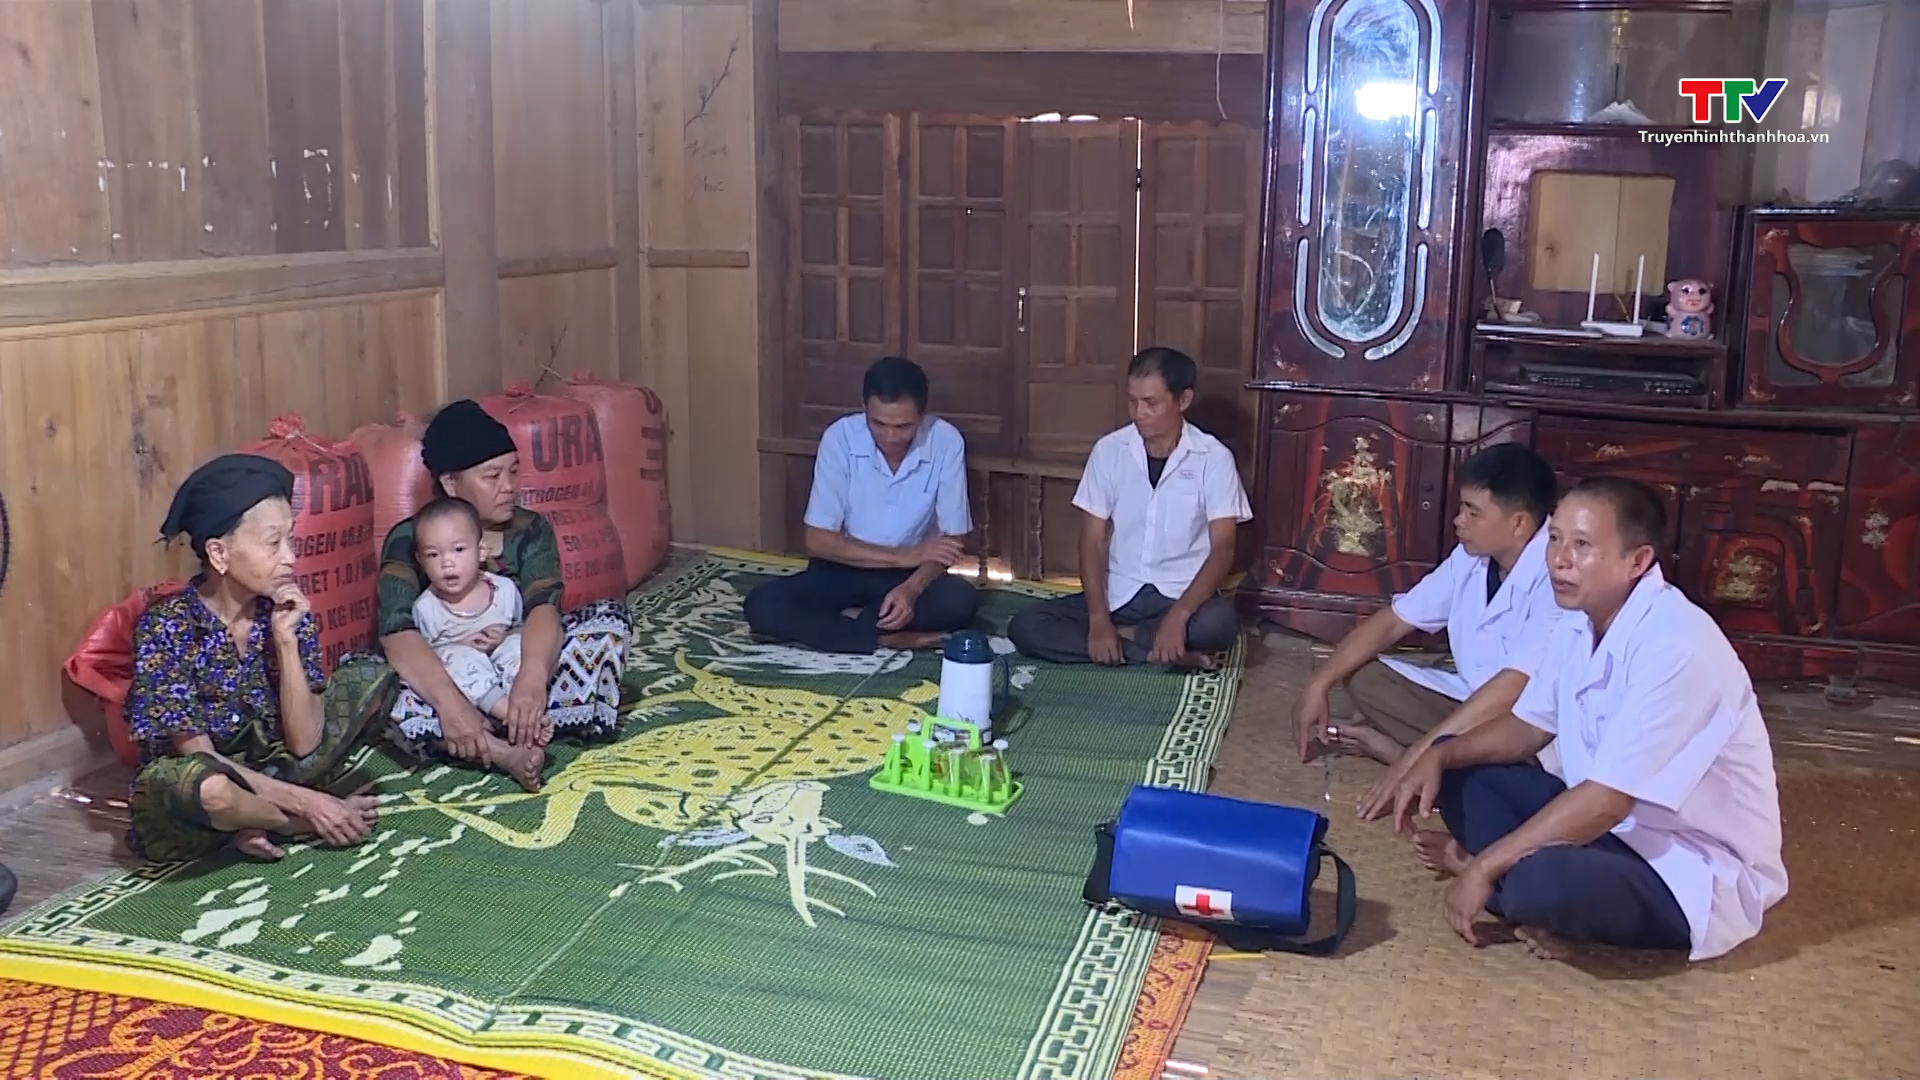 Trung tâm Y tế huyện Mường Lát làm tốt công tác chăm sóc sức khỏe cho nhân dân - Ảnh 2.